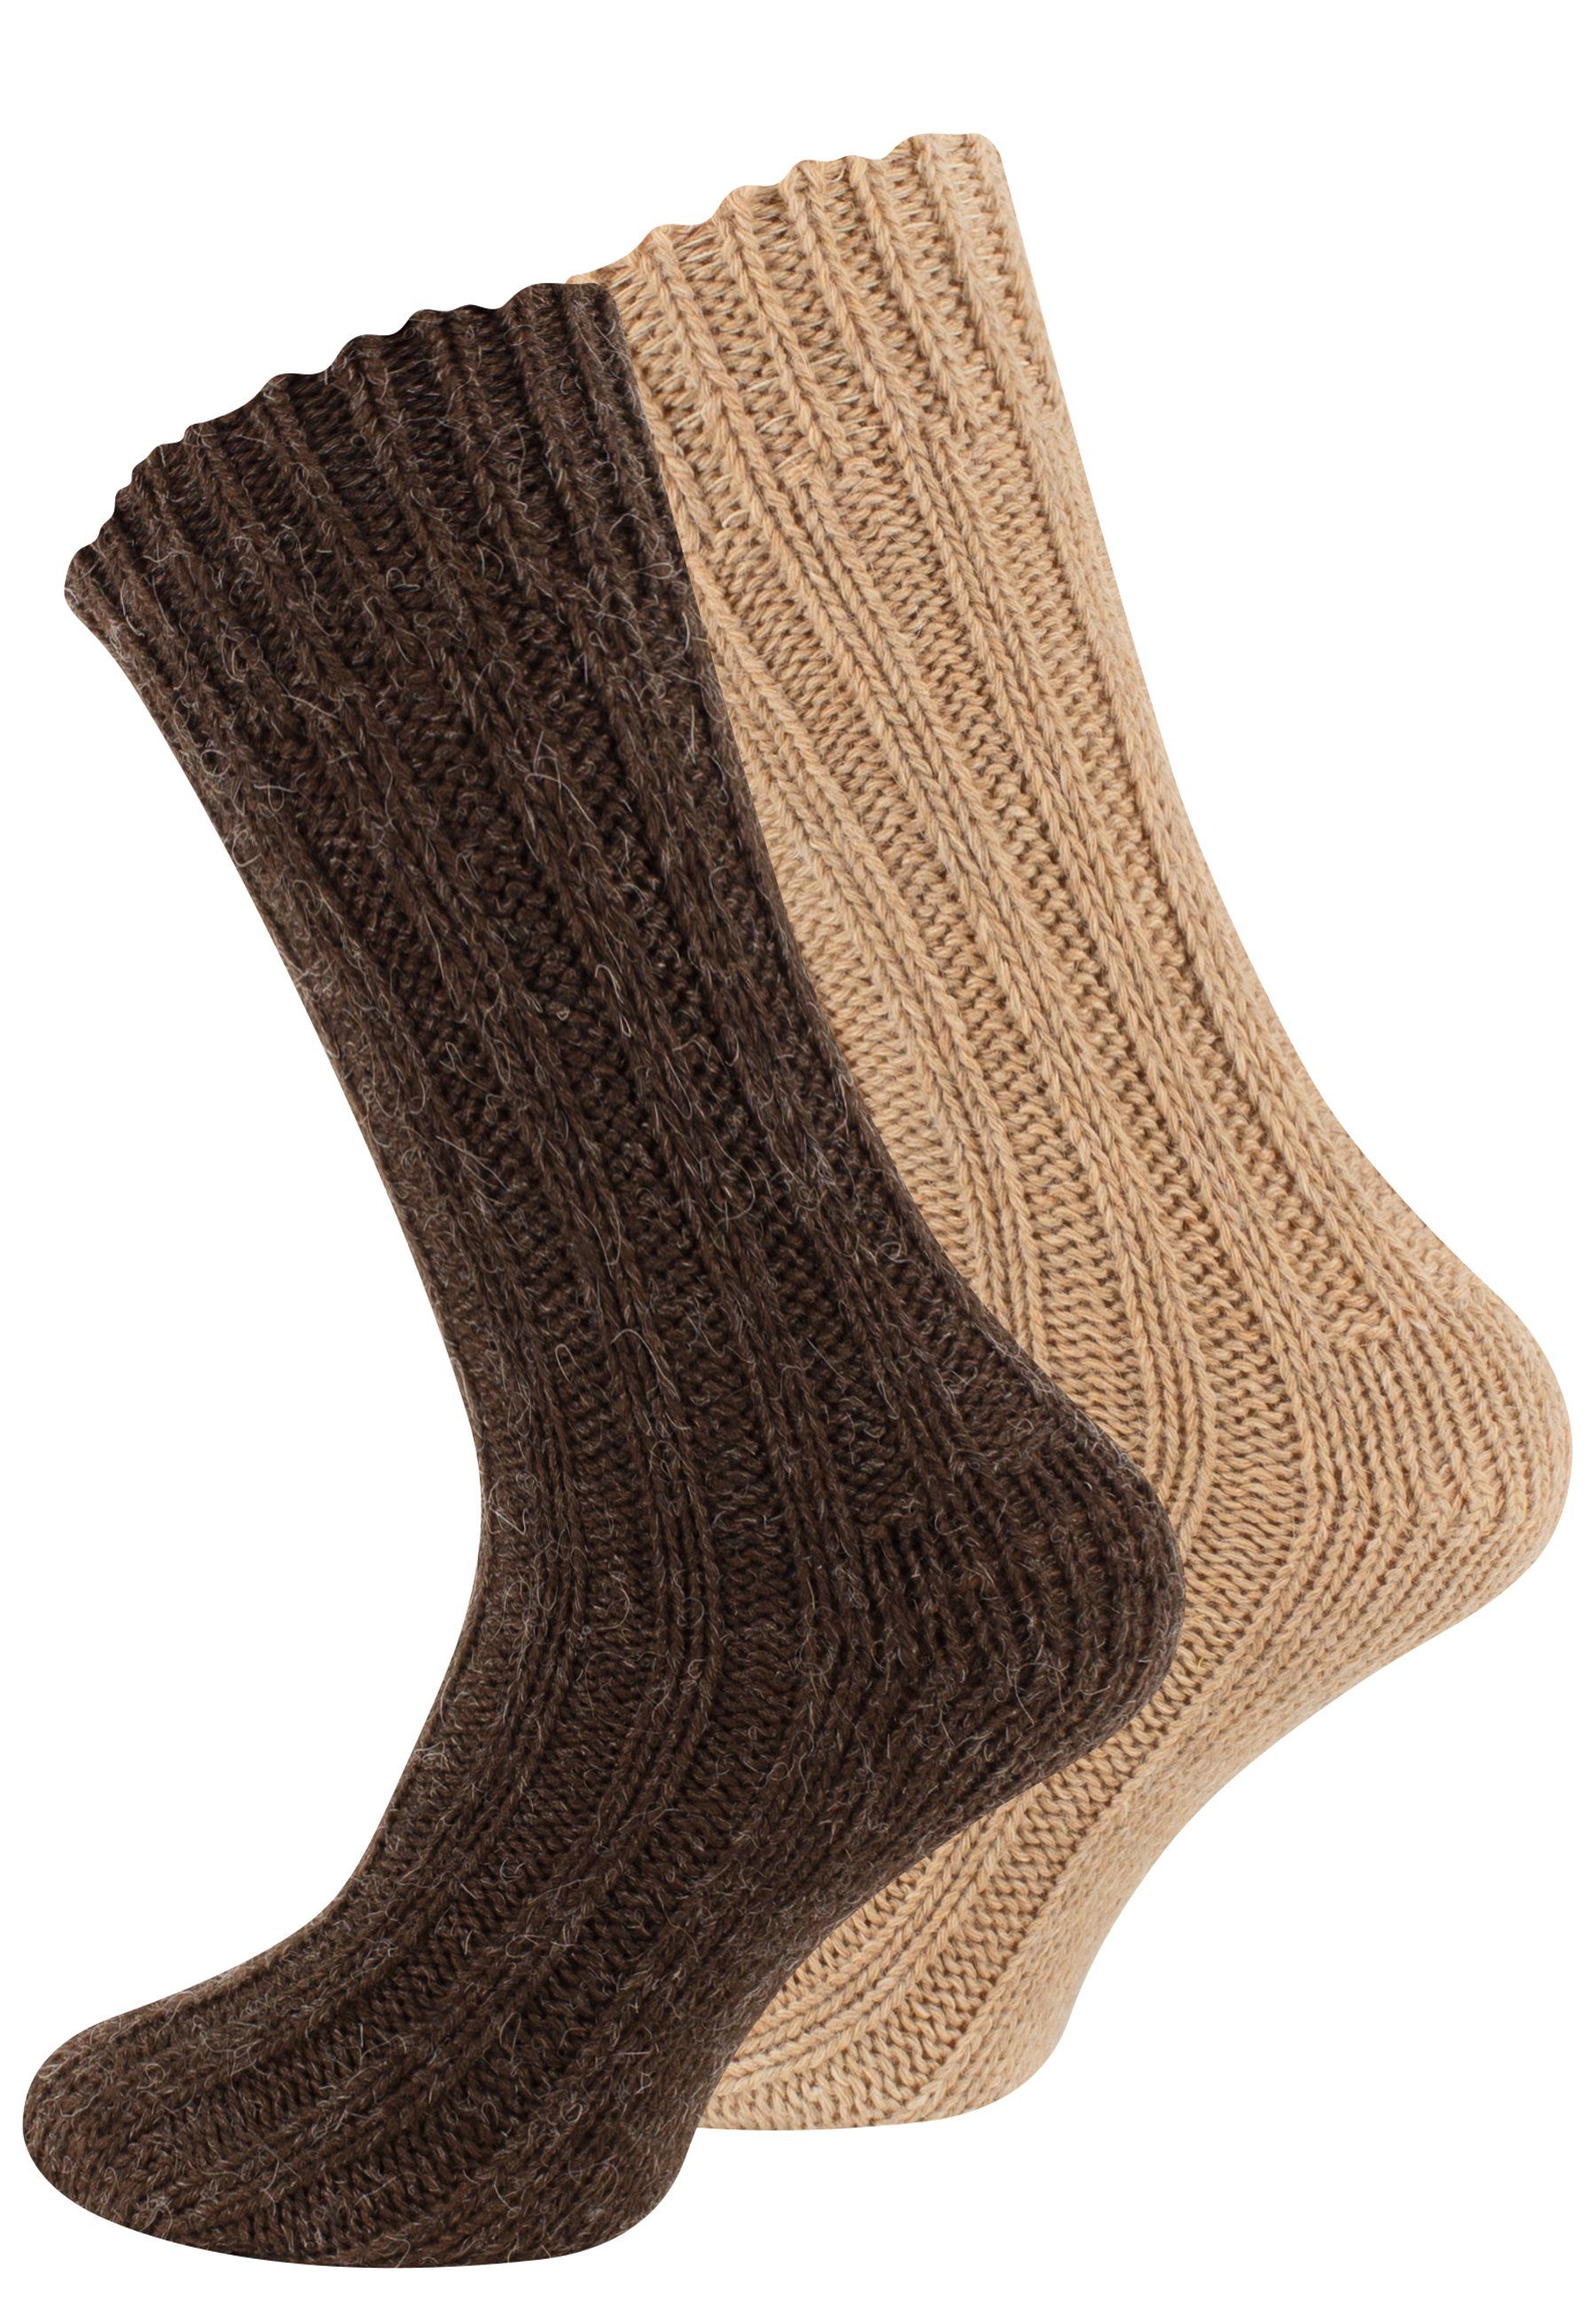 Cotton Prime® Socken Unisex Alpakasocken (4-Paar) ökologisch gefärbt und vorgewaschen